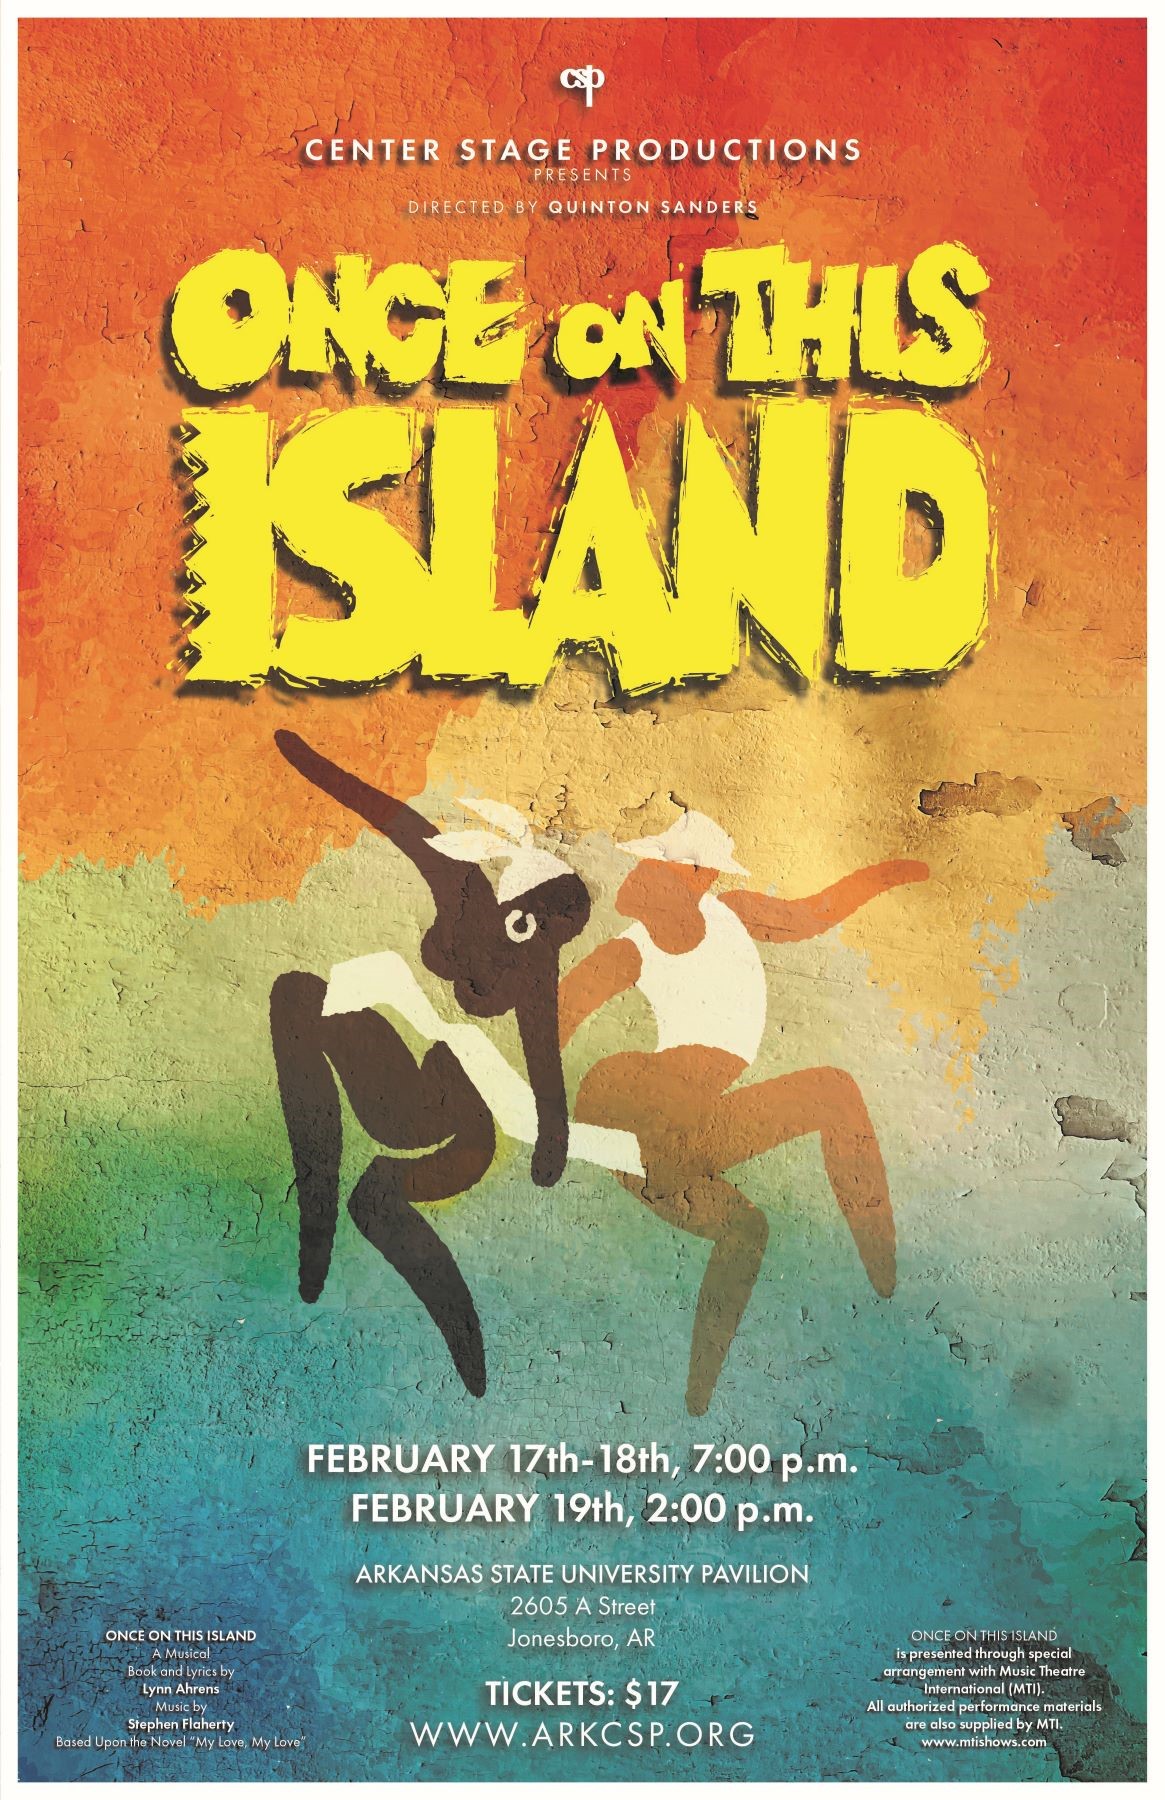 Once On This Island  on feb. 17, 19:00@ASU pavilion - Compra entradas y obtén información enCenter Stage Productions 